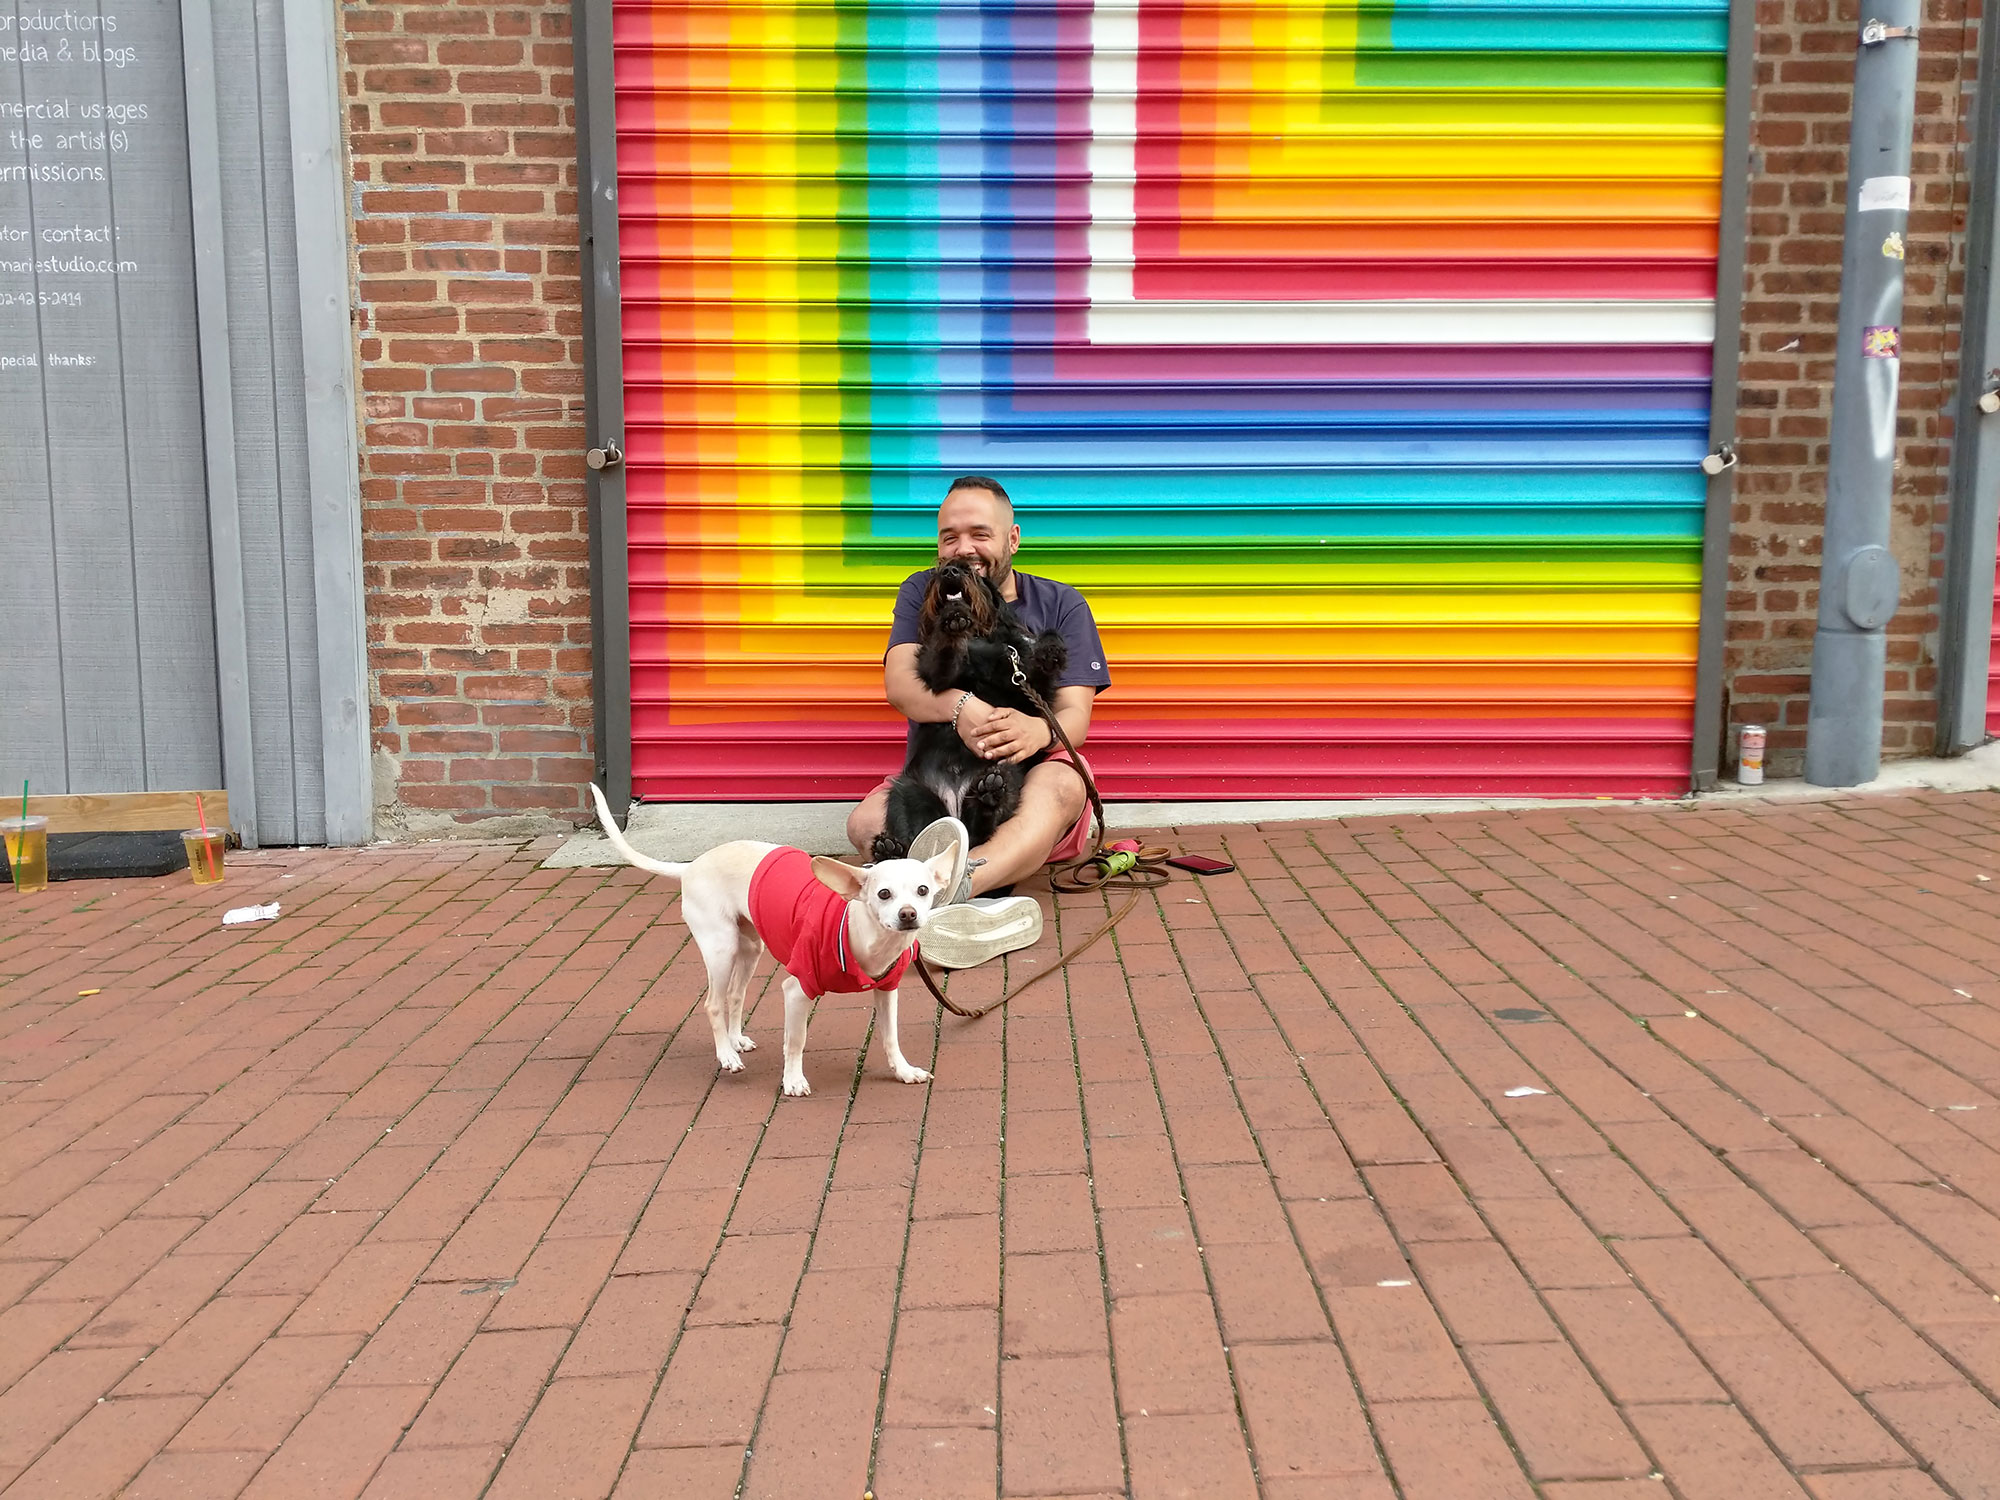 Dennis Jansen at the Rainbow Mural in Blagden Alley.